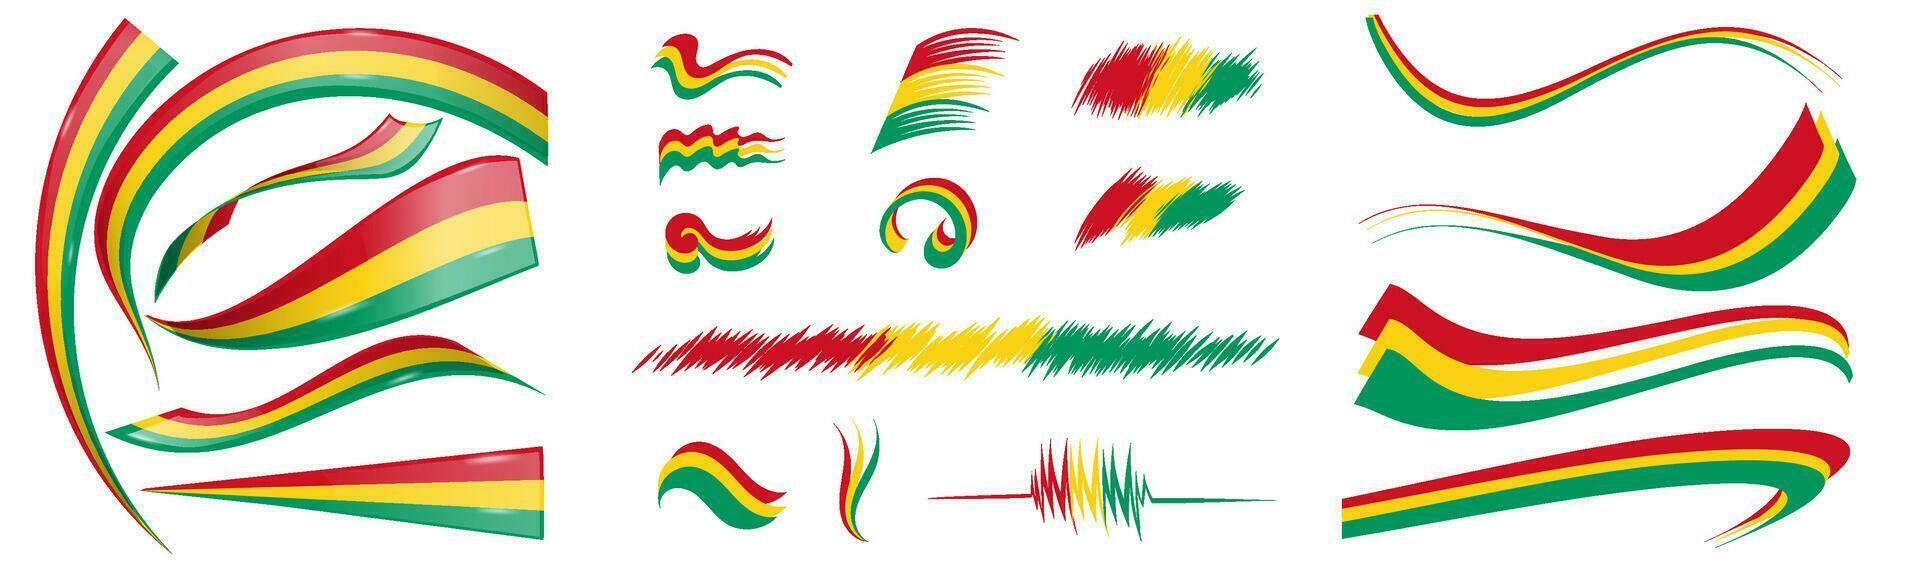 guinea flagga uppsättning element, vektor illustration på en vit bakgrund